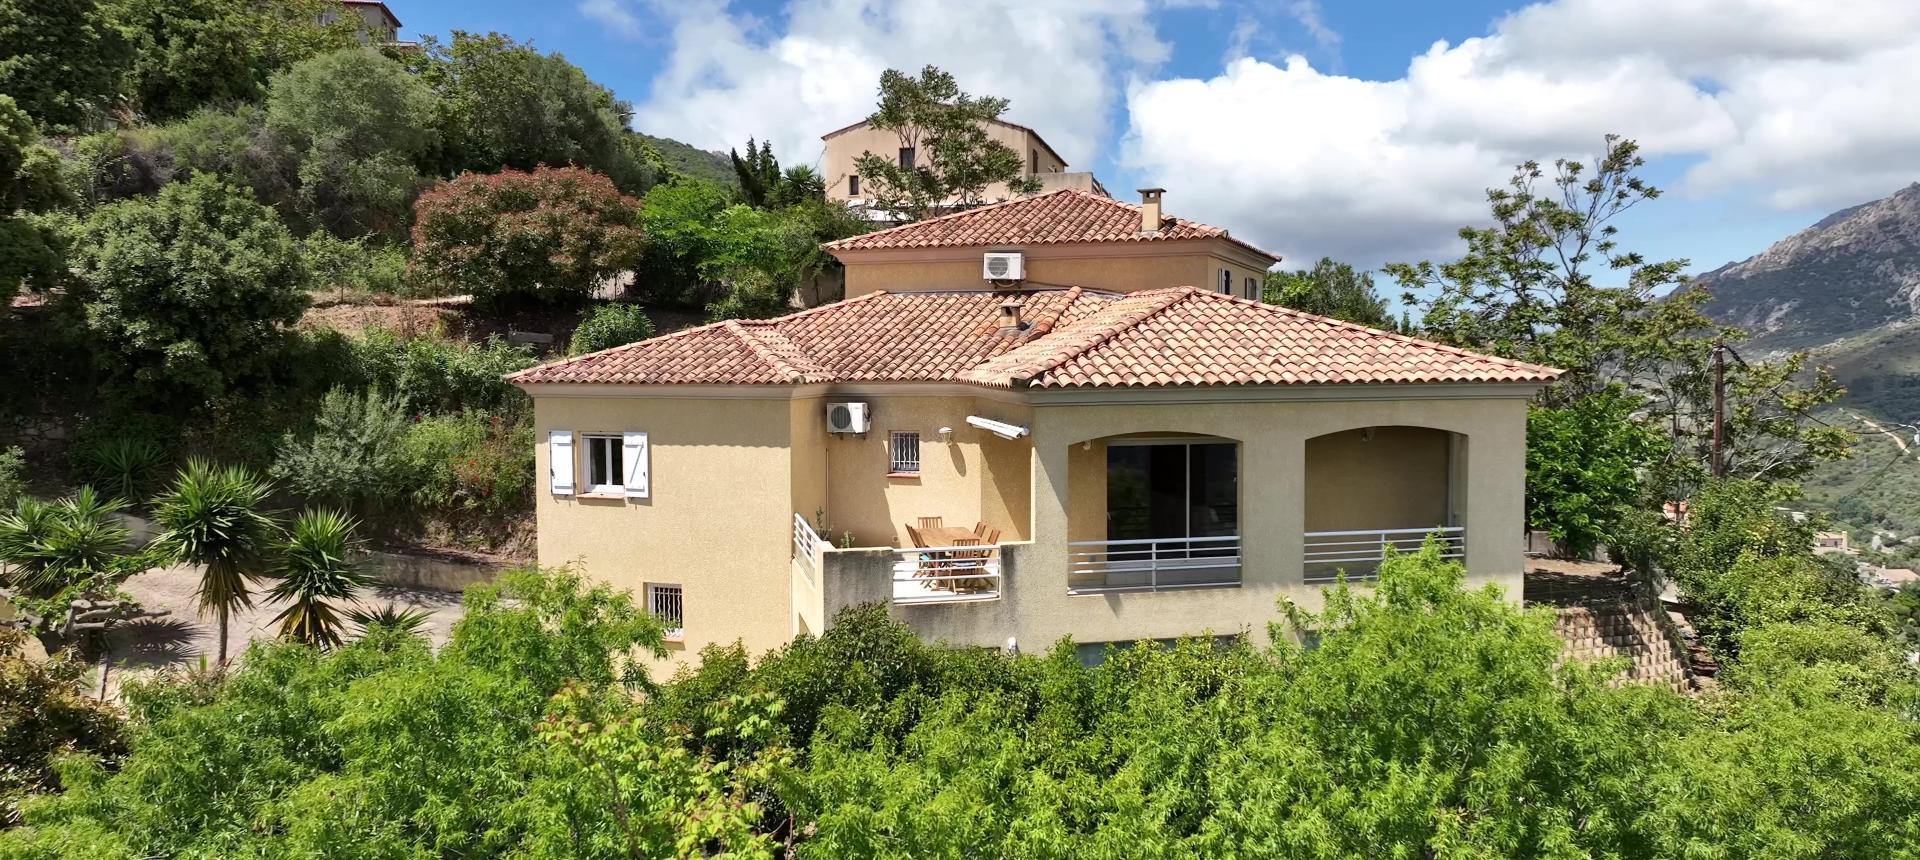 Maison avec piscine à vendre à Ajaccio - Salario